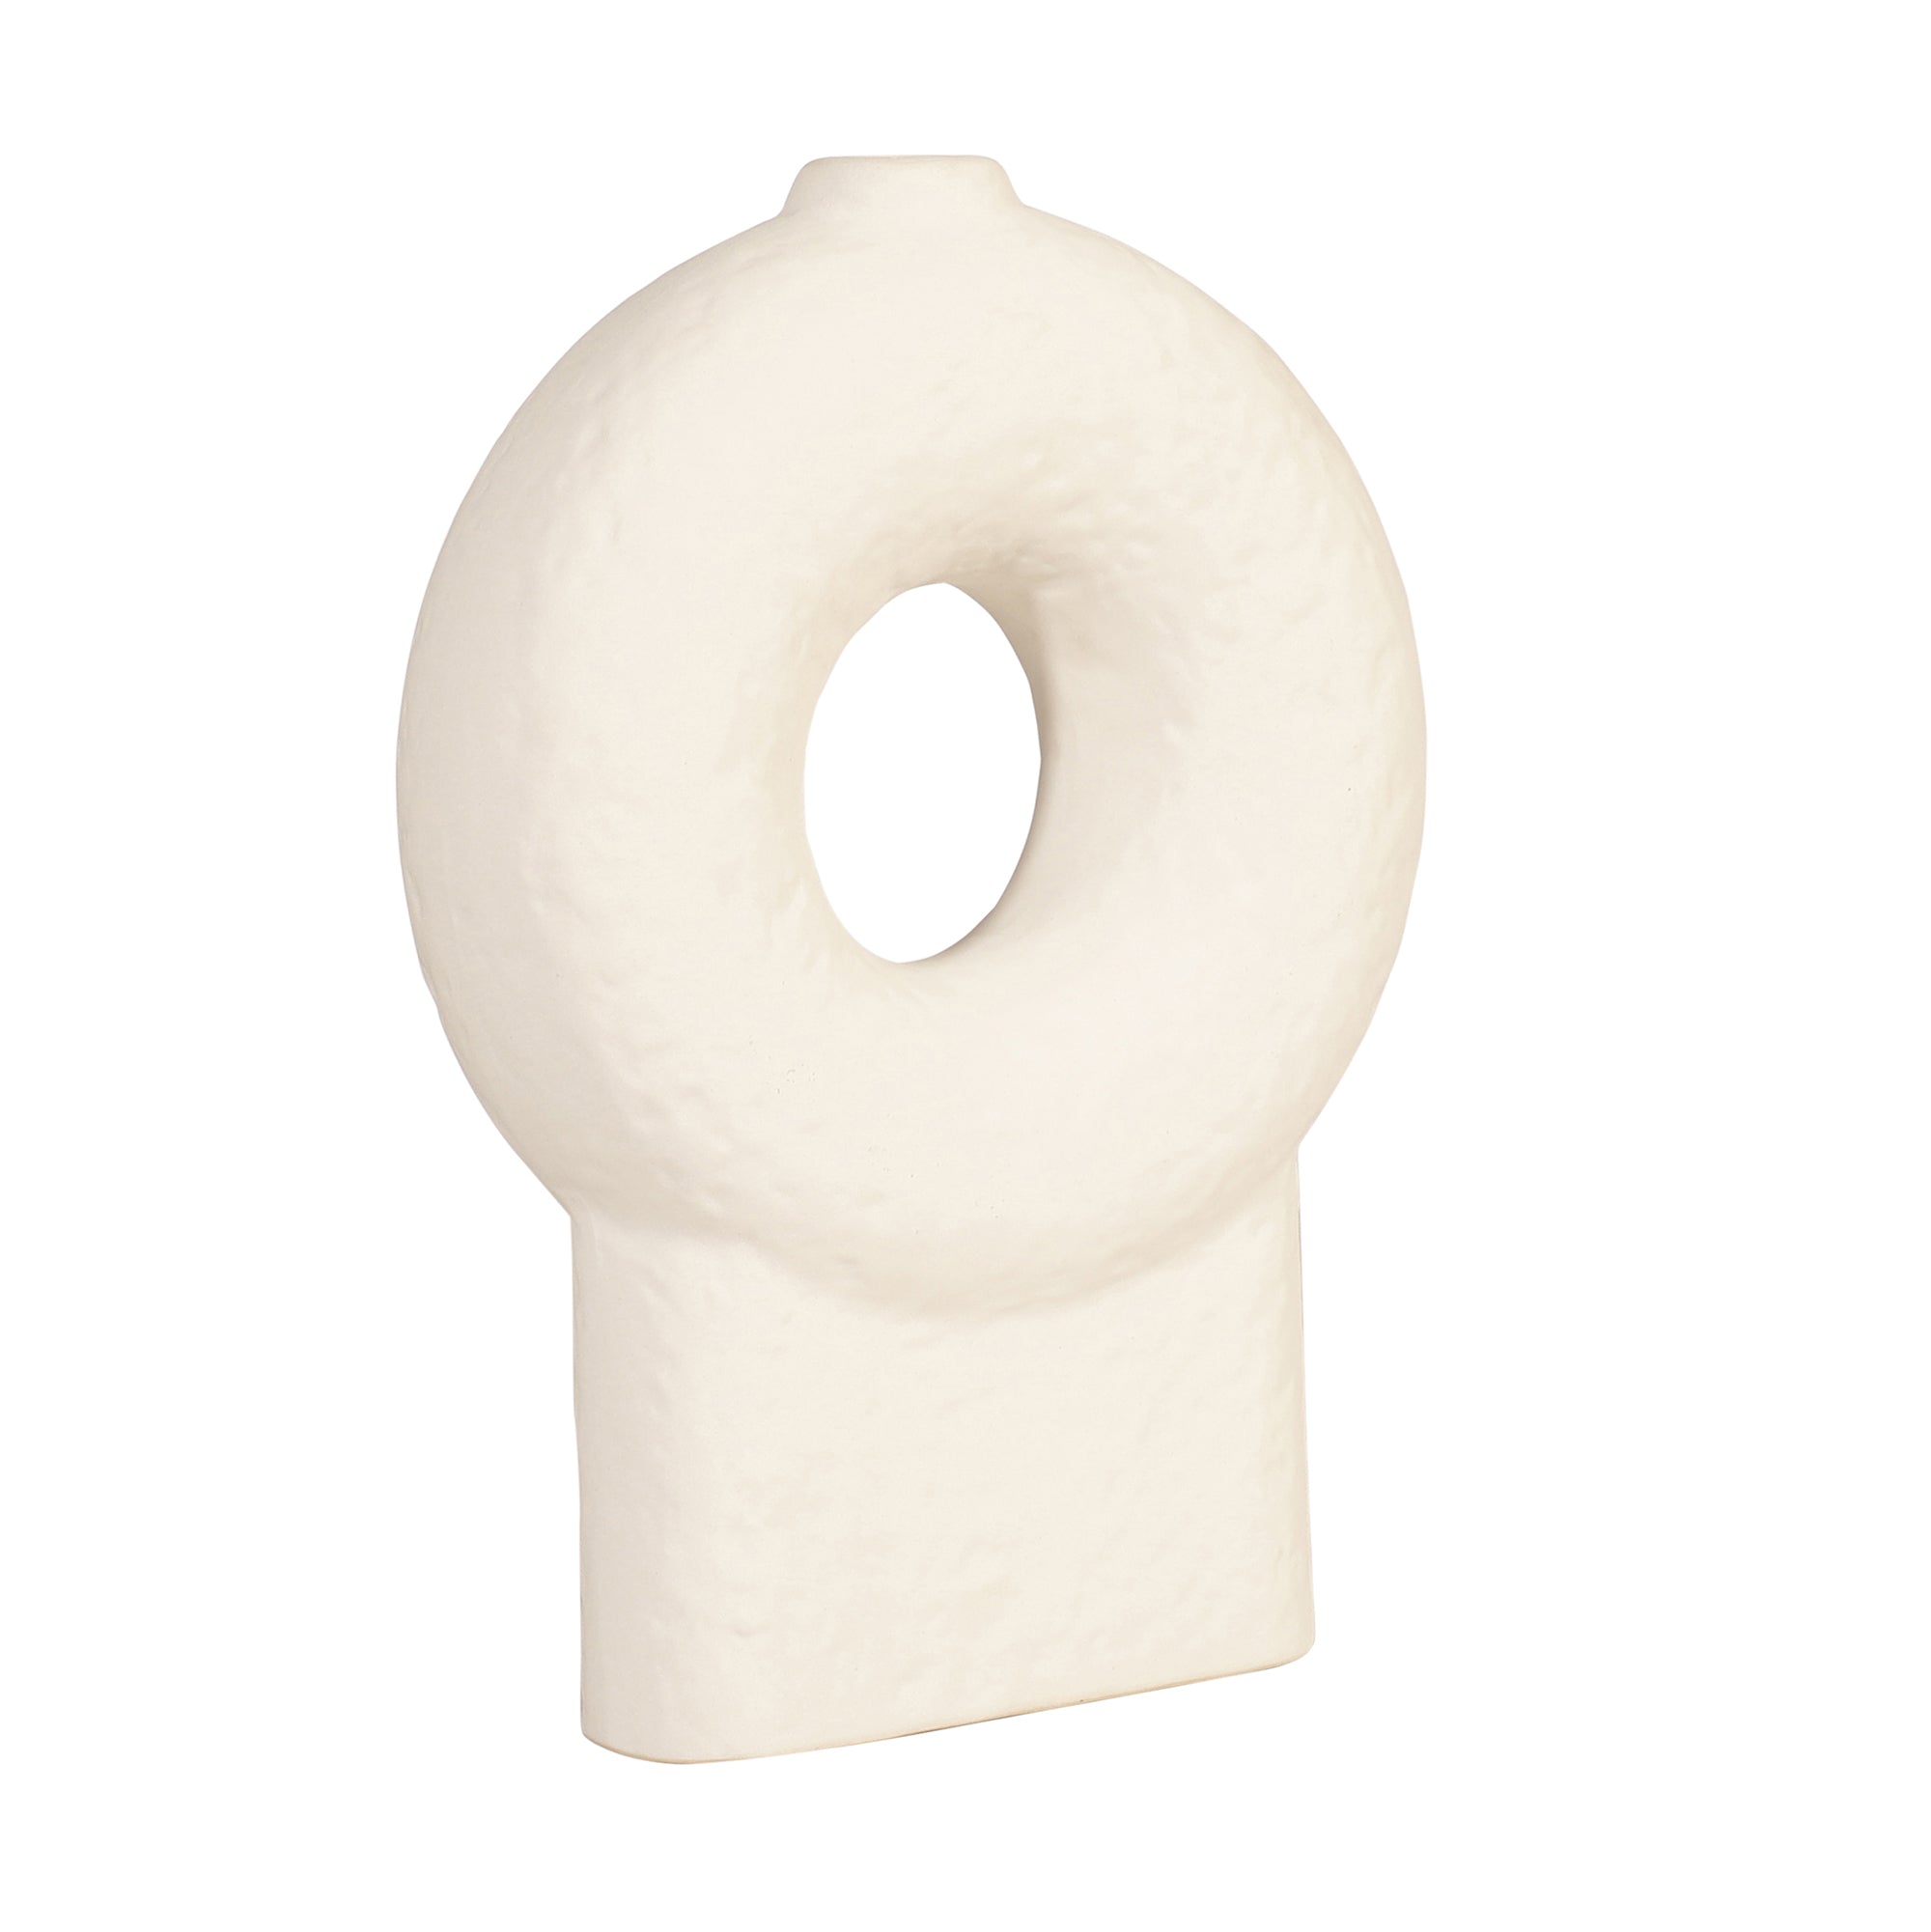 Ceramic Donut Vase (Medium)